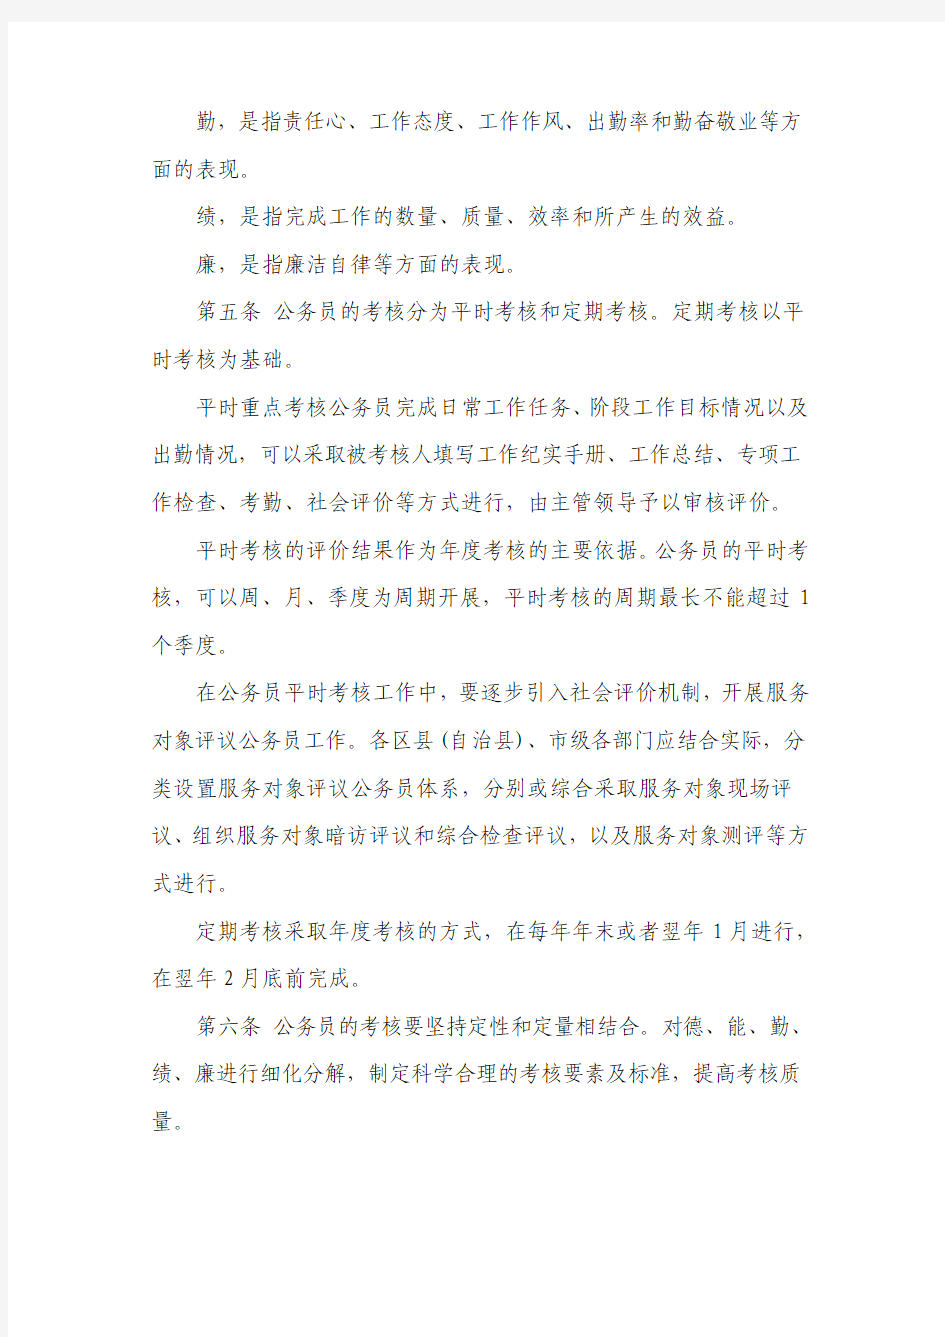 重庆市公务员考核实施办法(试行)